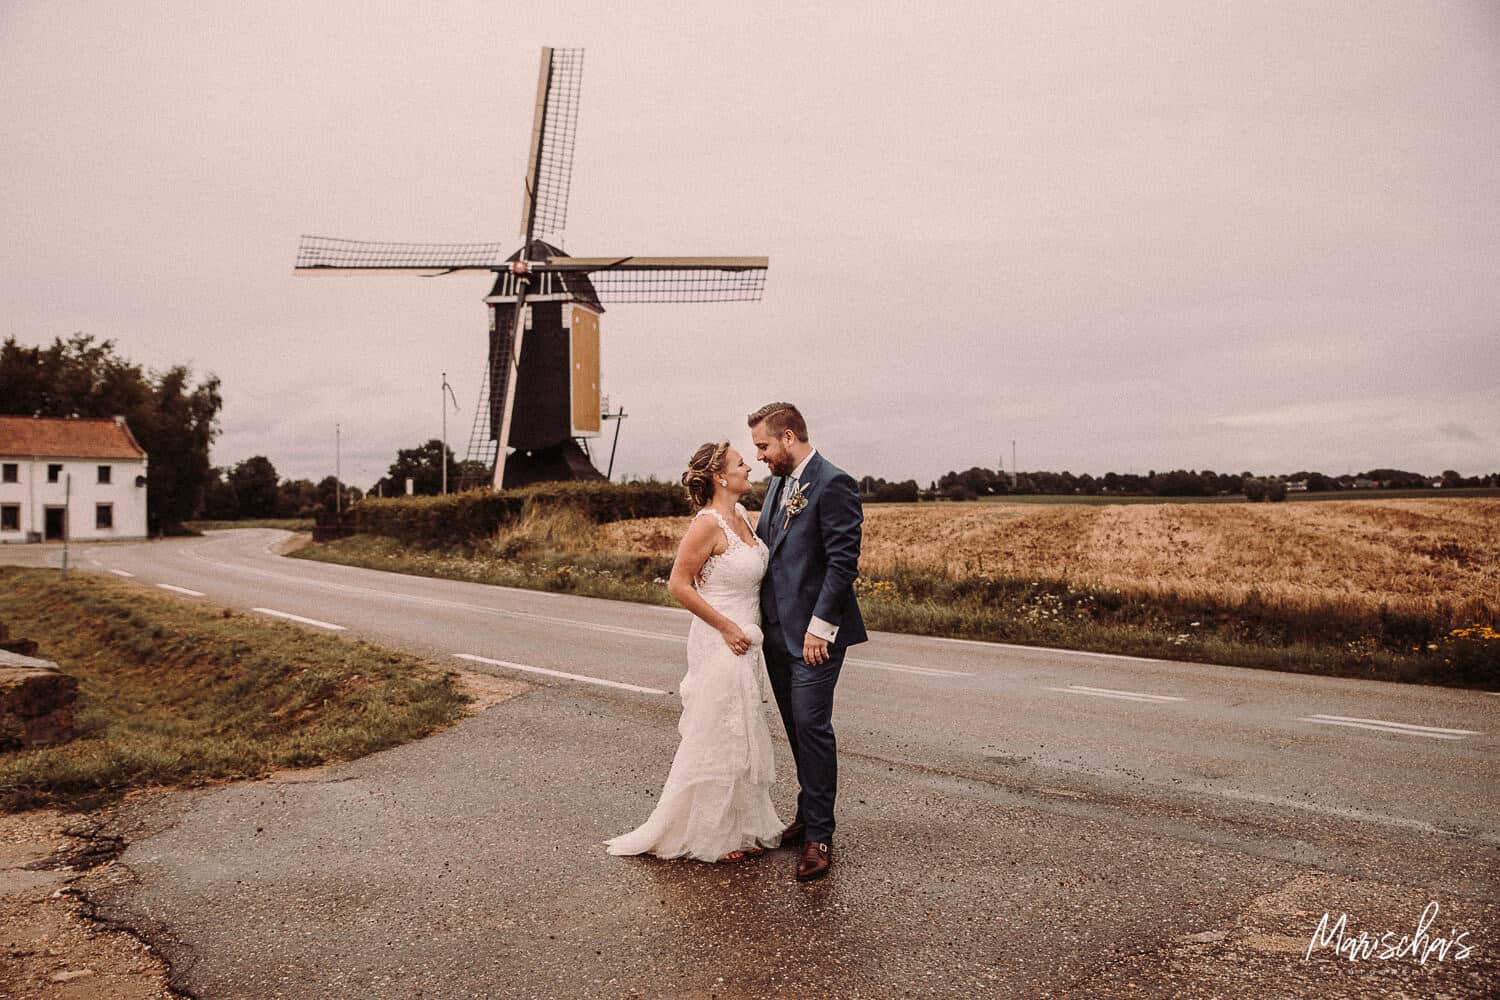 Als fotograaf mocht ik de bruiloft fotograferen van dit bruidspaar bij Aan de Meule in Beek (Limburg).